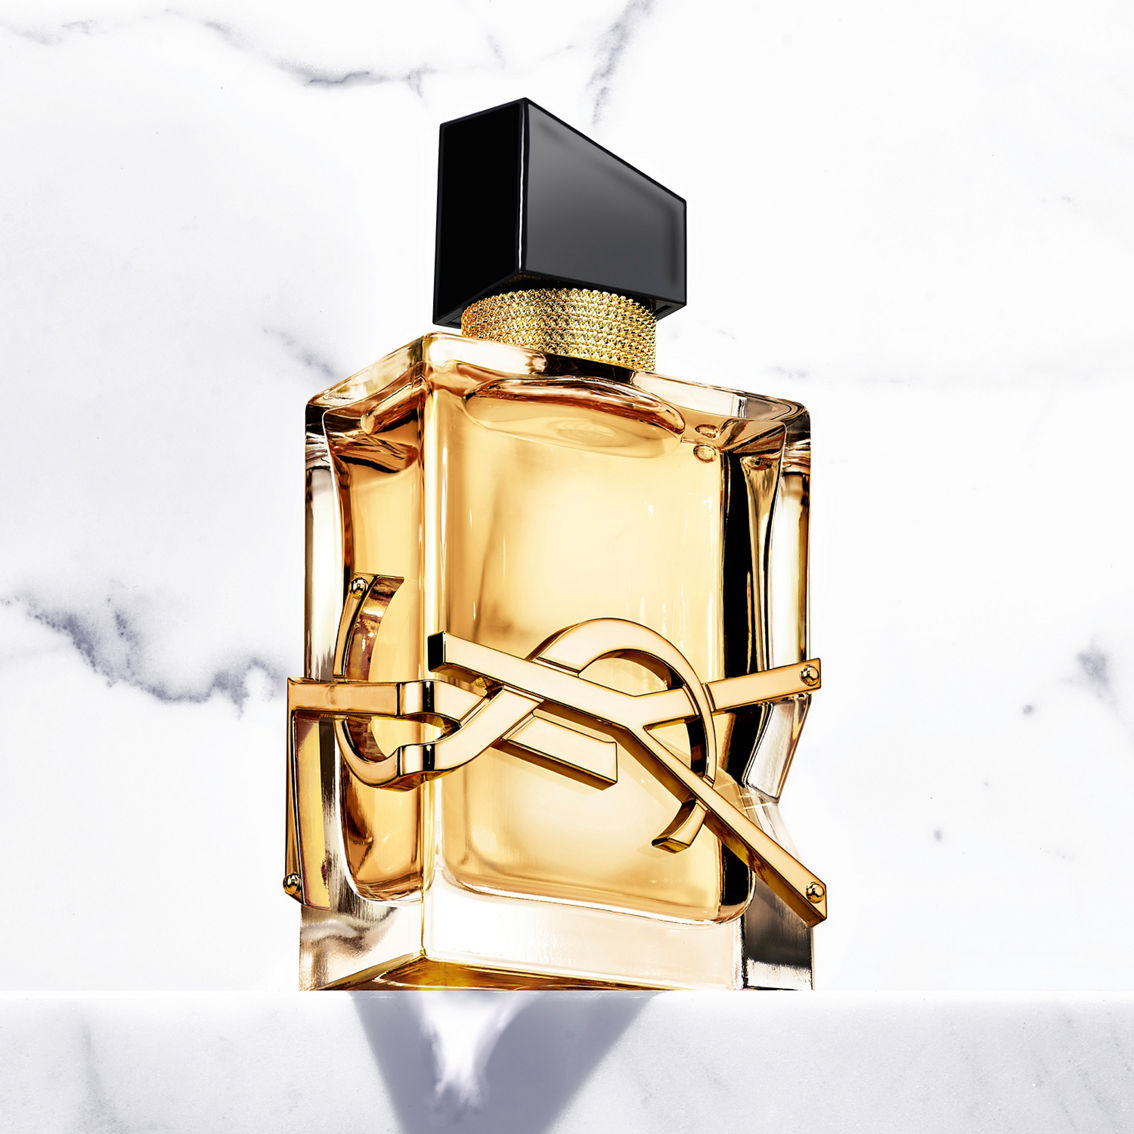 Yves Saint Laurent Libre Eau de Parfum 3 pc. Gift Set - Image 2 of 3